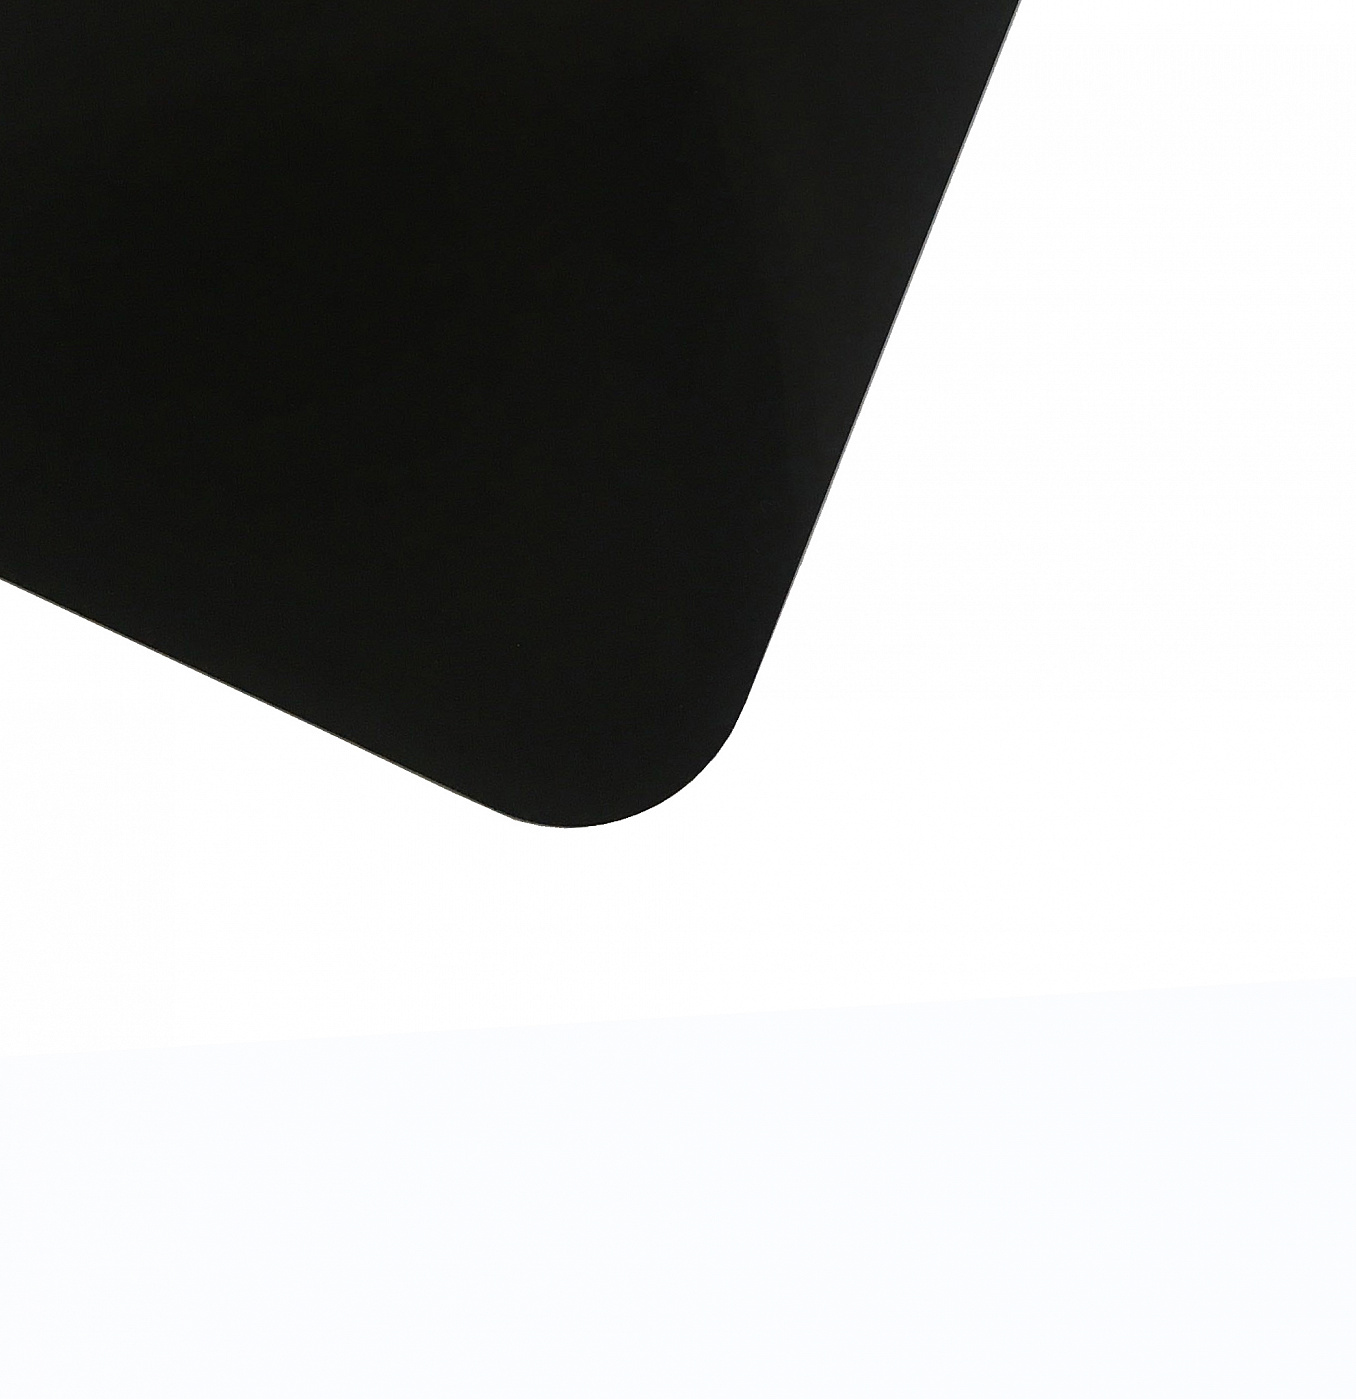 Планшет для пленэра из оргстекла 3 мм, под лист размера 21х30 см, цвет черный Dec-9082041